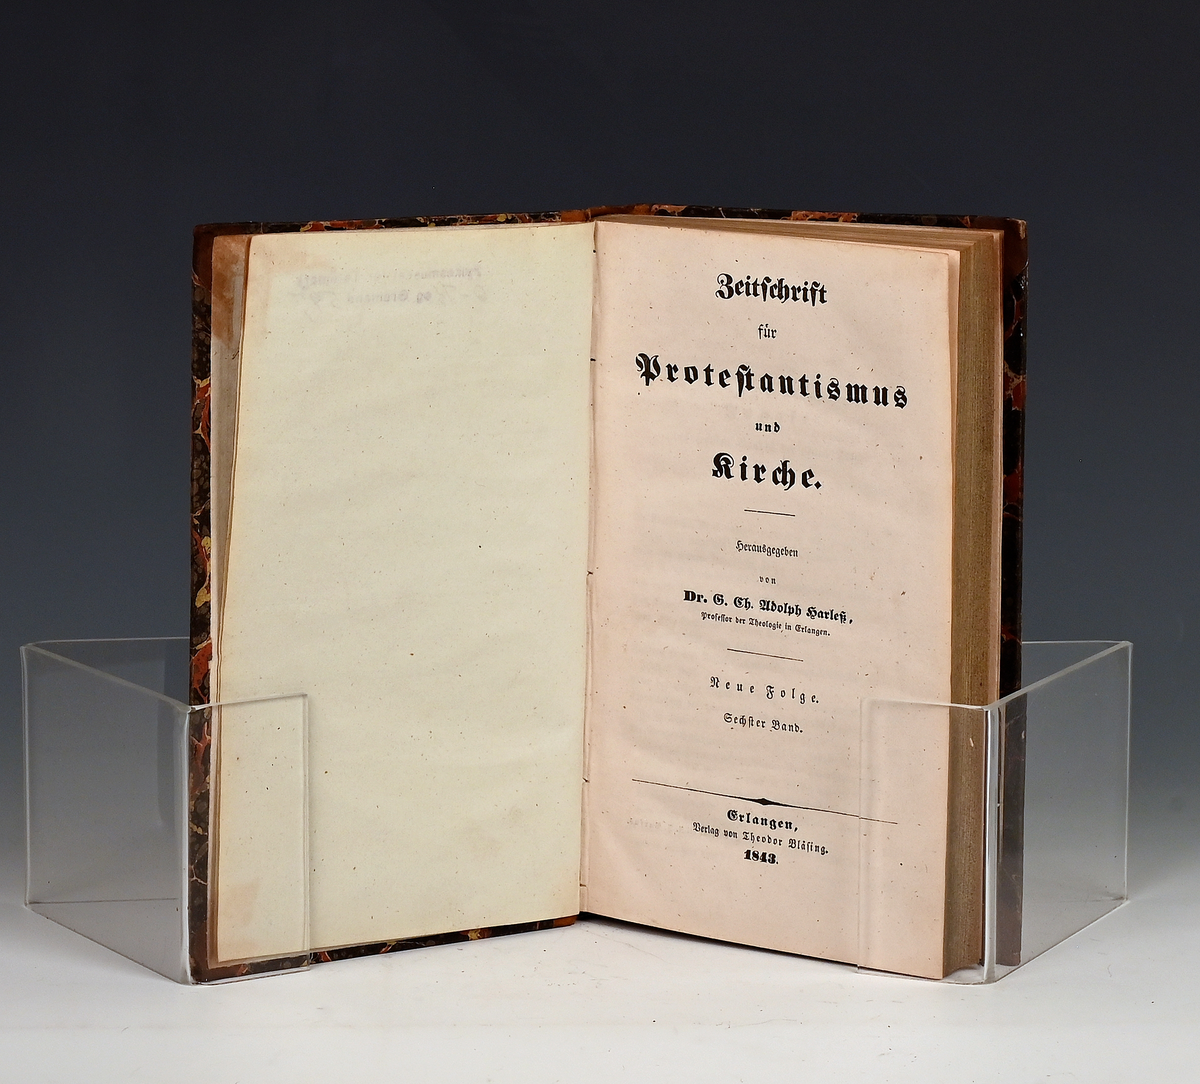 Zeitschrifte für Protestantismus und Kirche. Hgg. v. G. Ch. Joolsph Harles (o.fl.)
VI, Neue Folge E. 1843